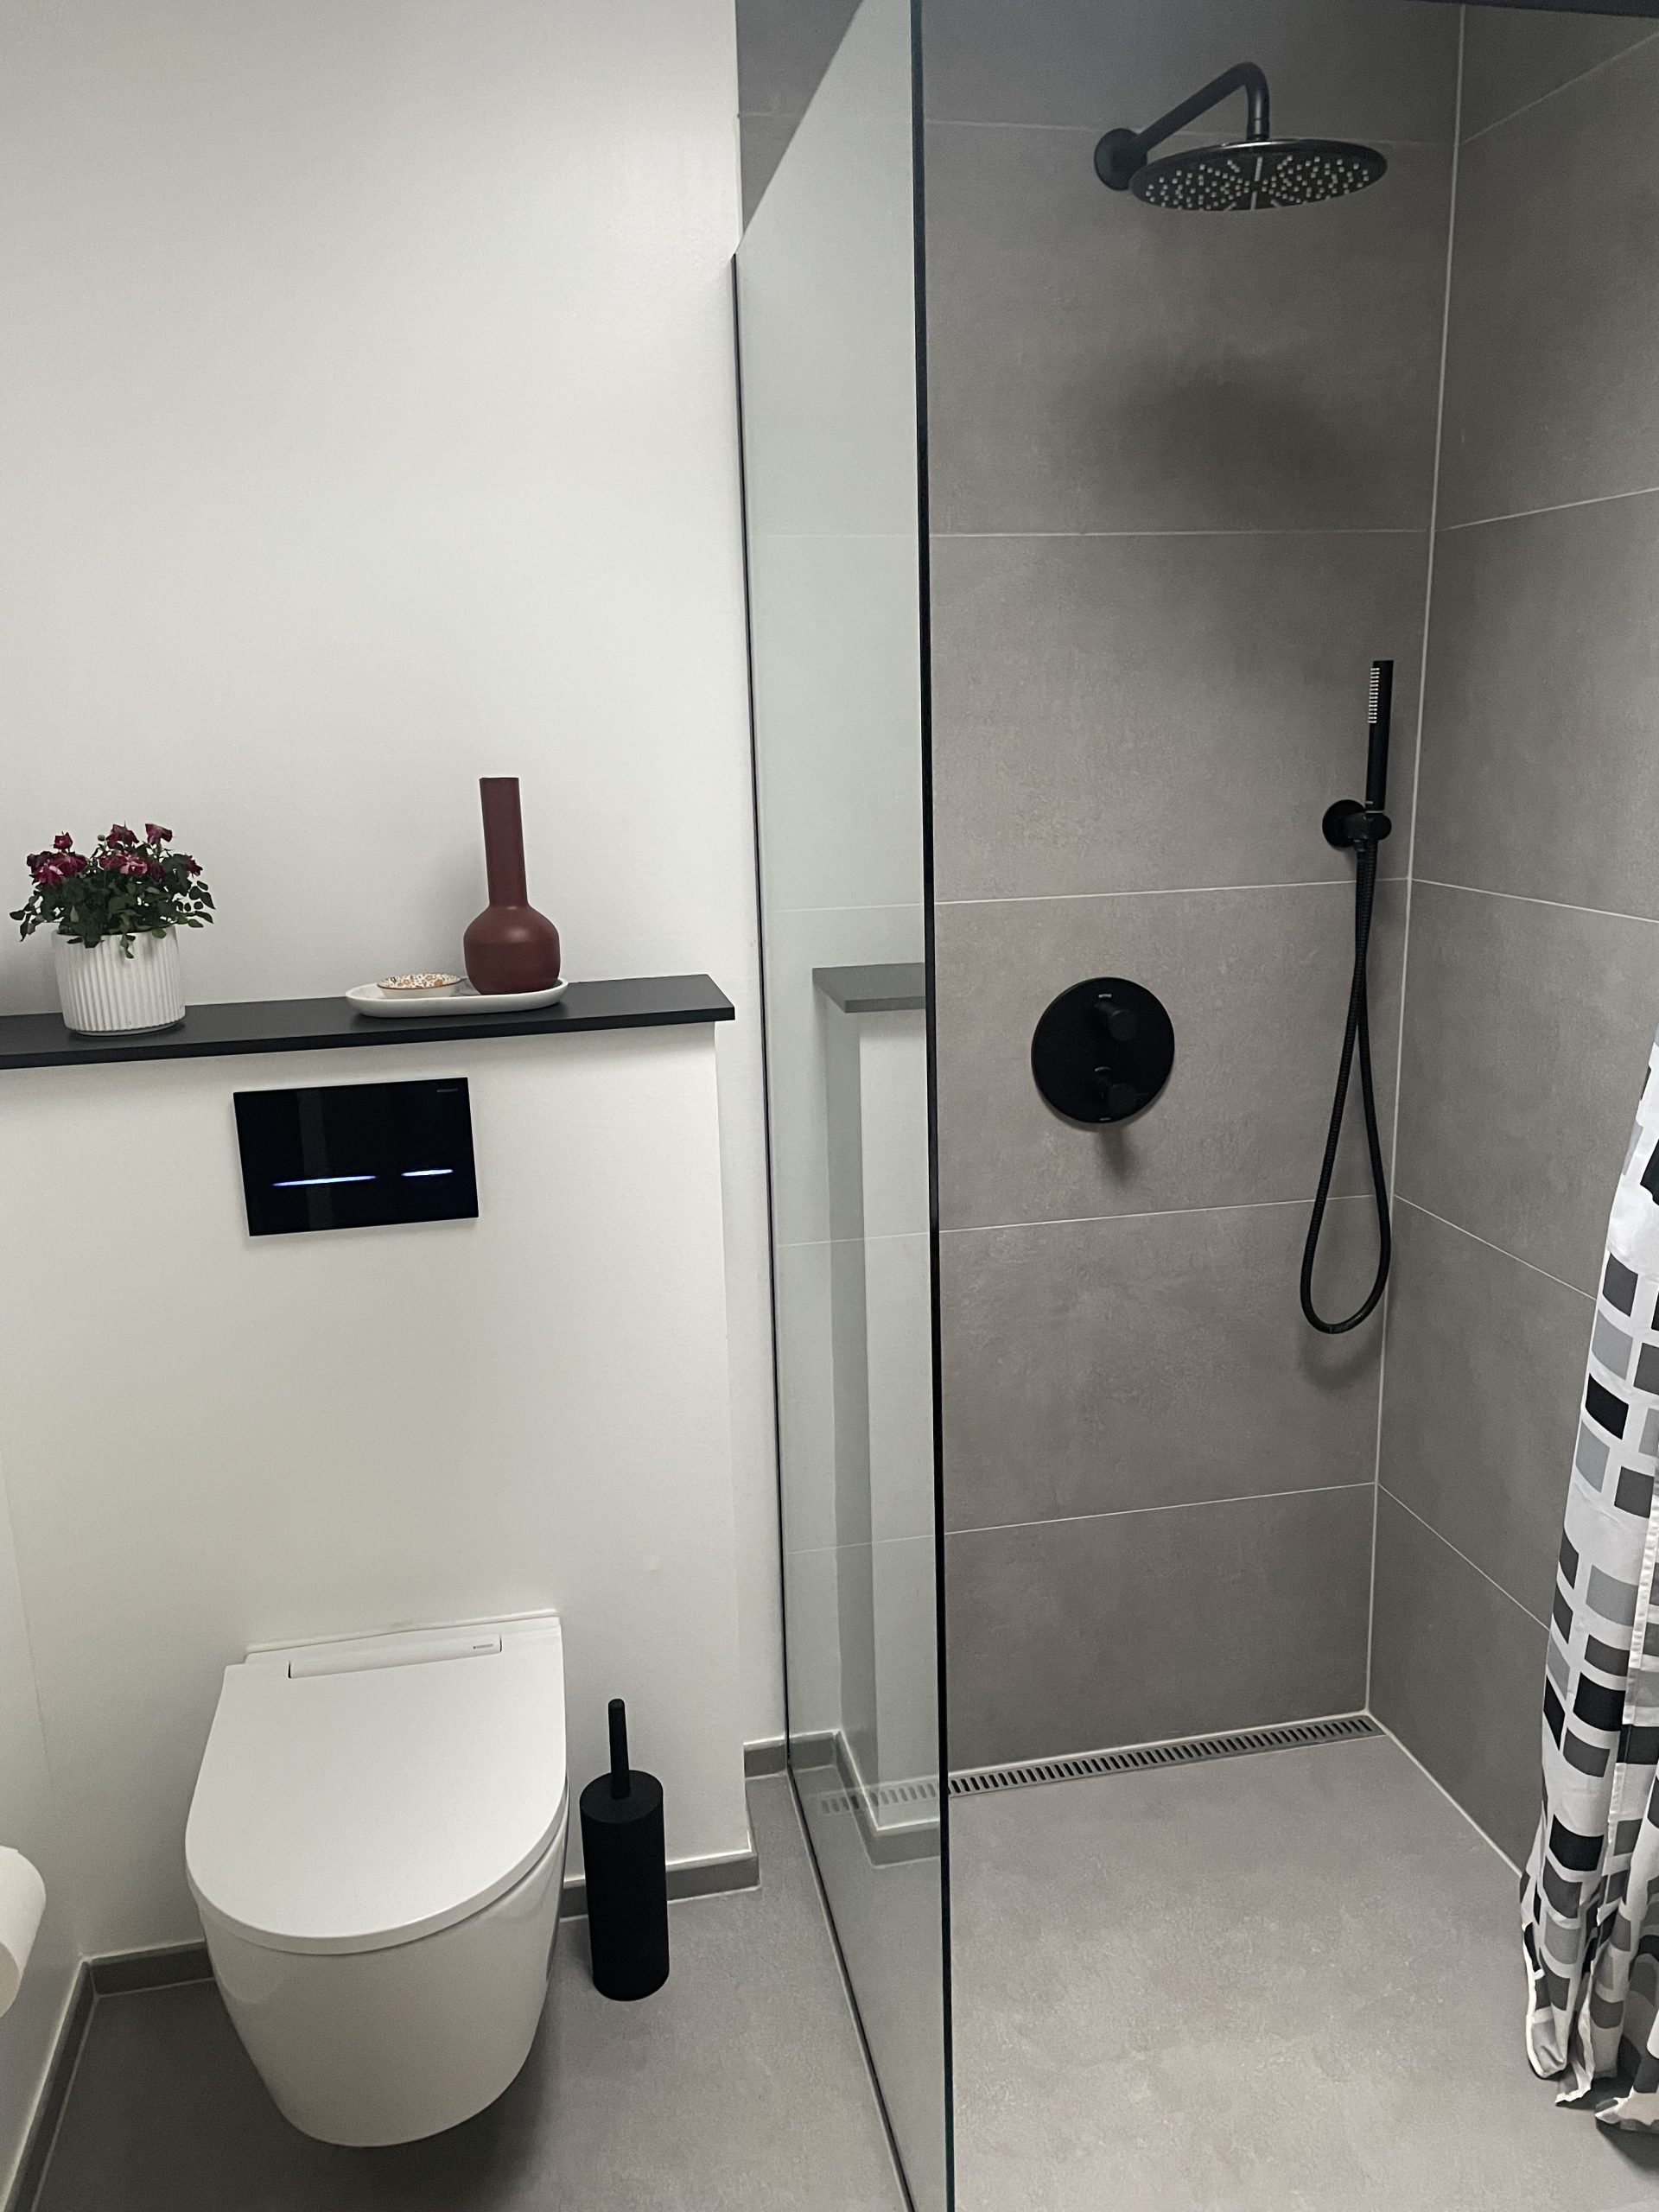 Nyrenoveret badeværelse med VVS installation, toilet, bad og gulvvarme fra Krüger VVS